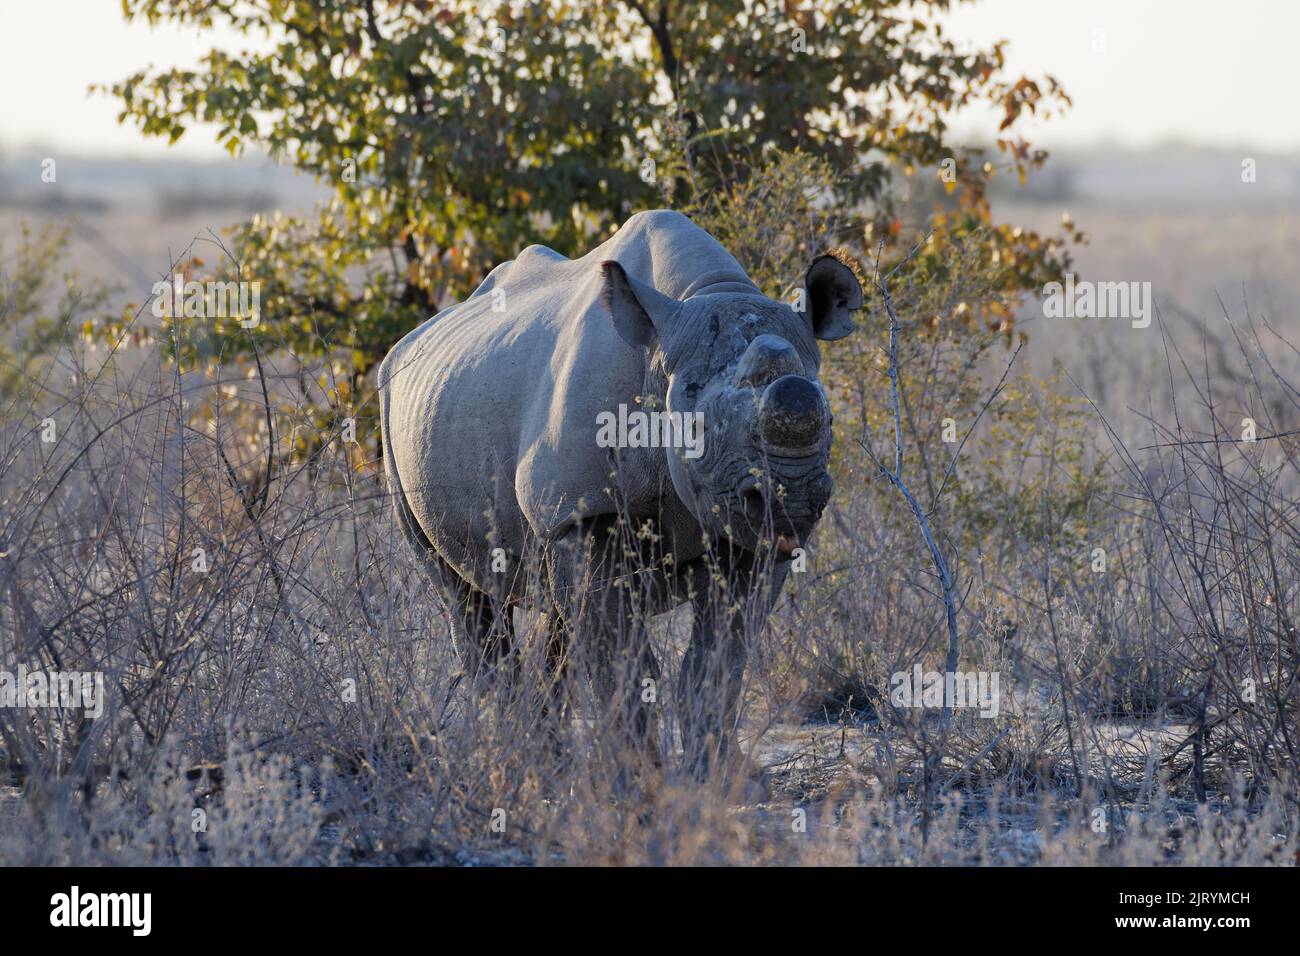 Rinoceronte negro (Diceros bicornis) con cuernos aserrados, medida contra la caza furtiva, forrajeo de adultos, Parque Nacional Etosha, Namibia, África Foto de stock